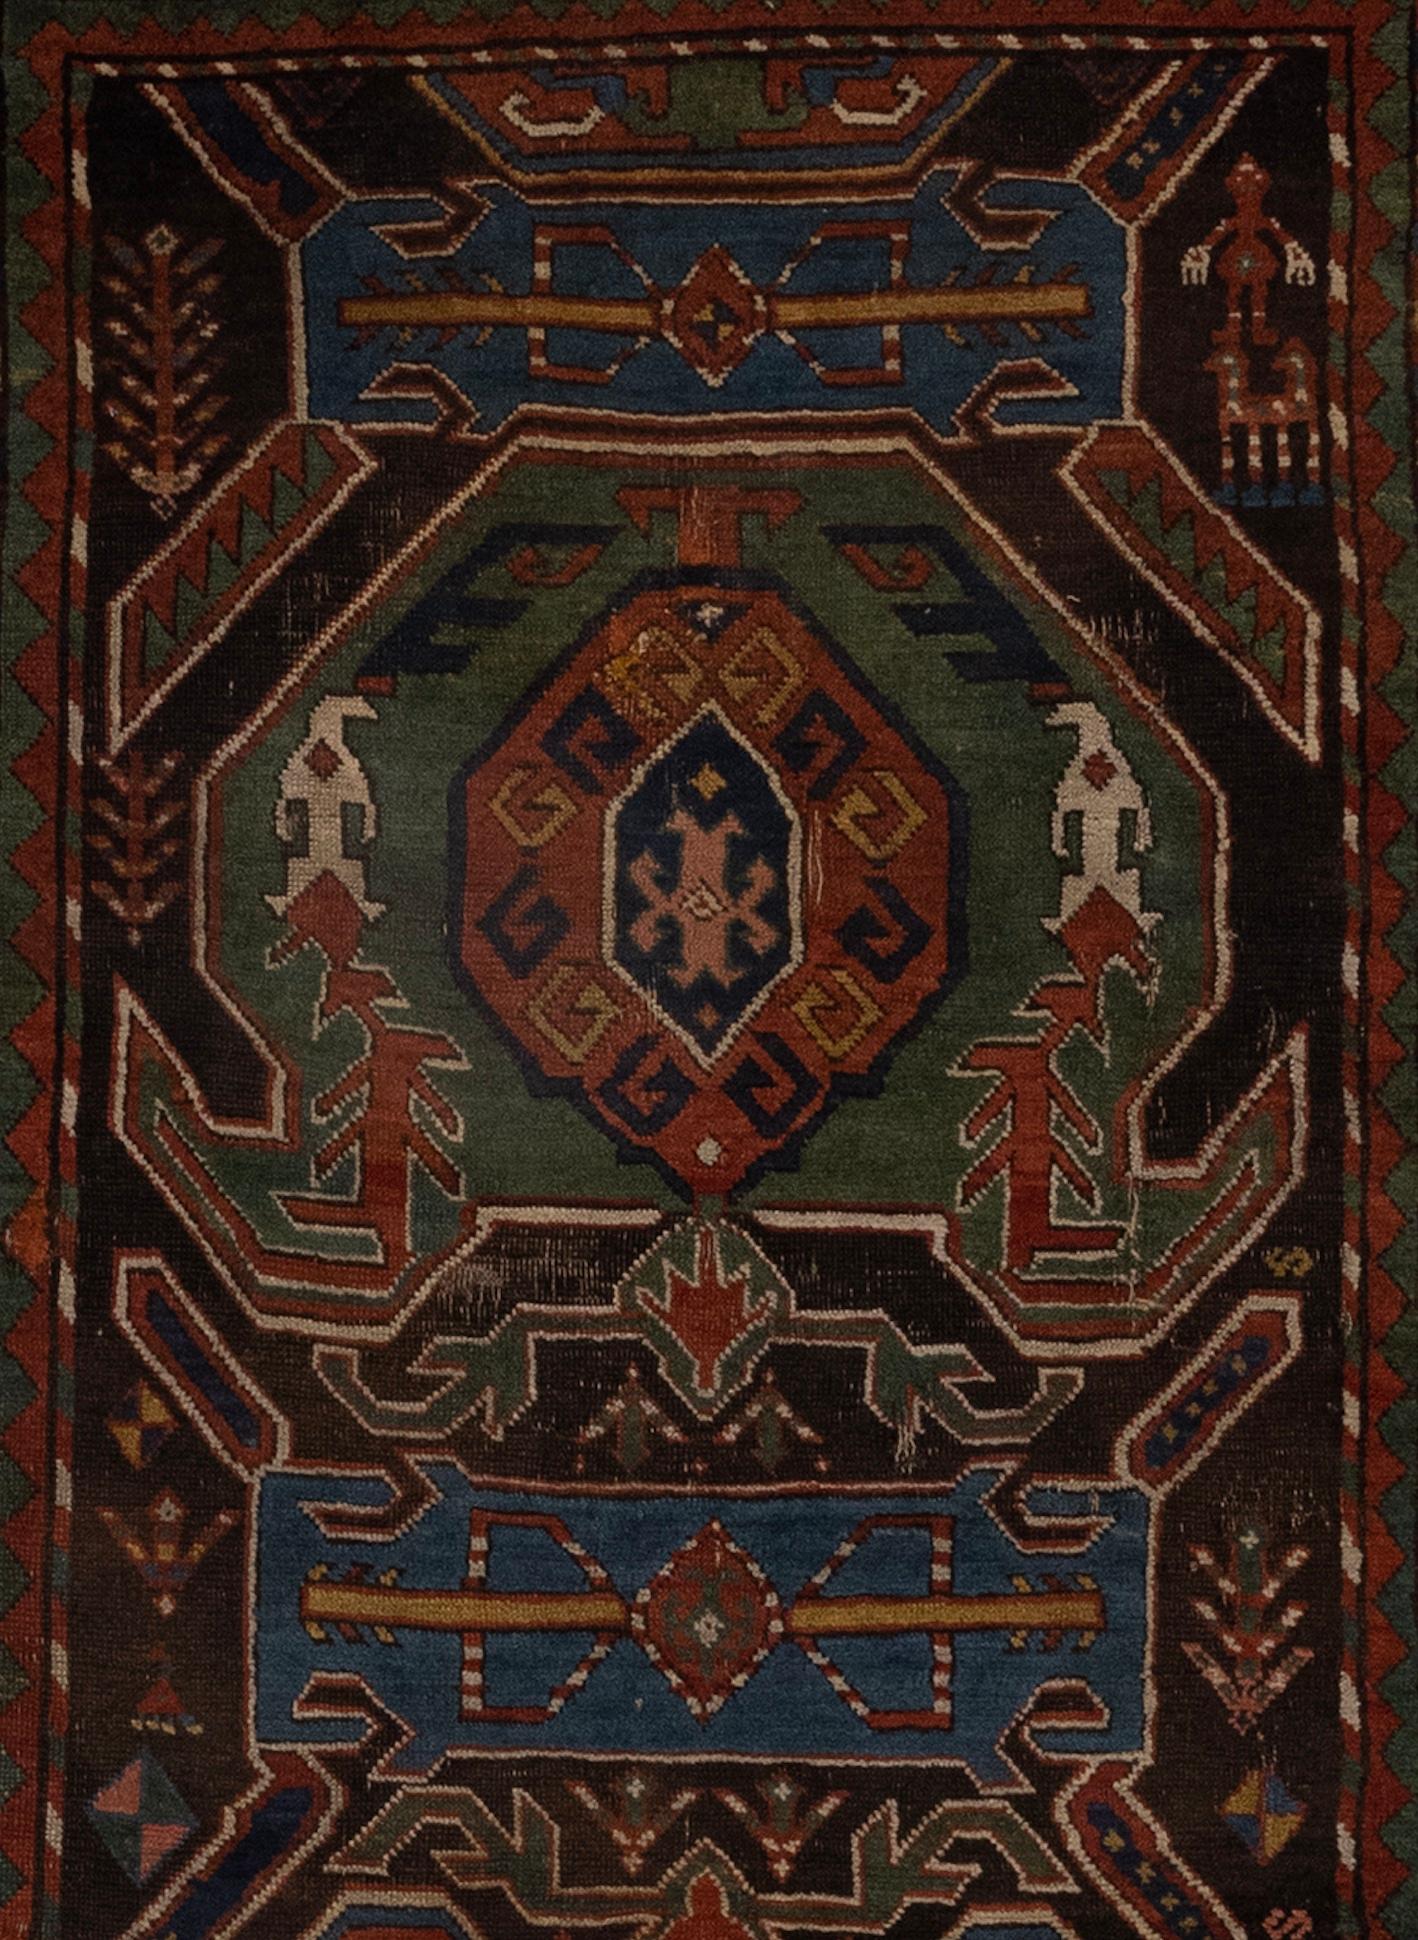 Le tapis caucasien antique aux couleurs rouge et verte est un chef-d'œuvre captivant qui reflète le riche patrimoine culturel et les traditions artistiques de la région du Caucase. Ce tapis témoigne du savoir-faire d'artisans qualifiés qui l'ont